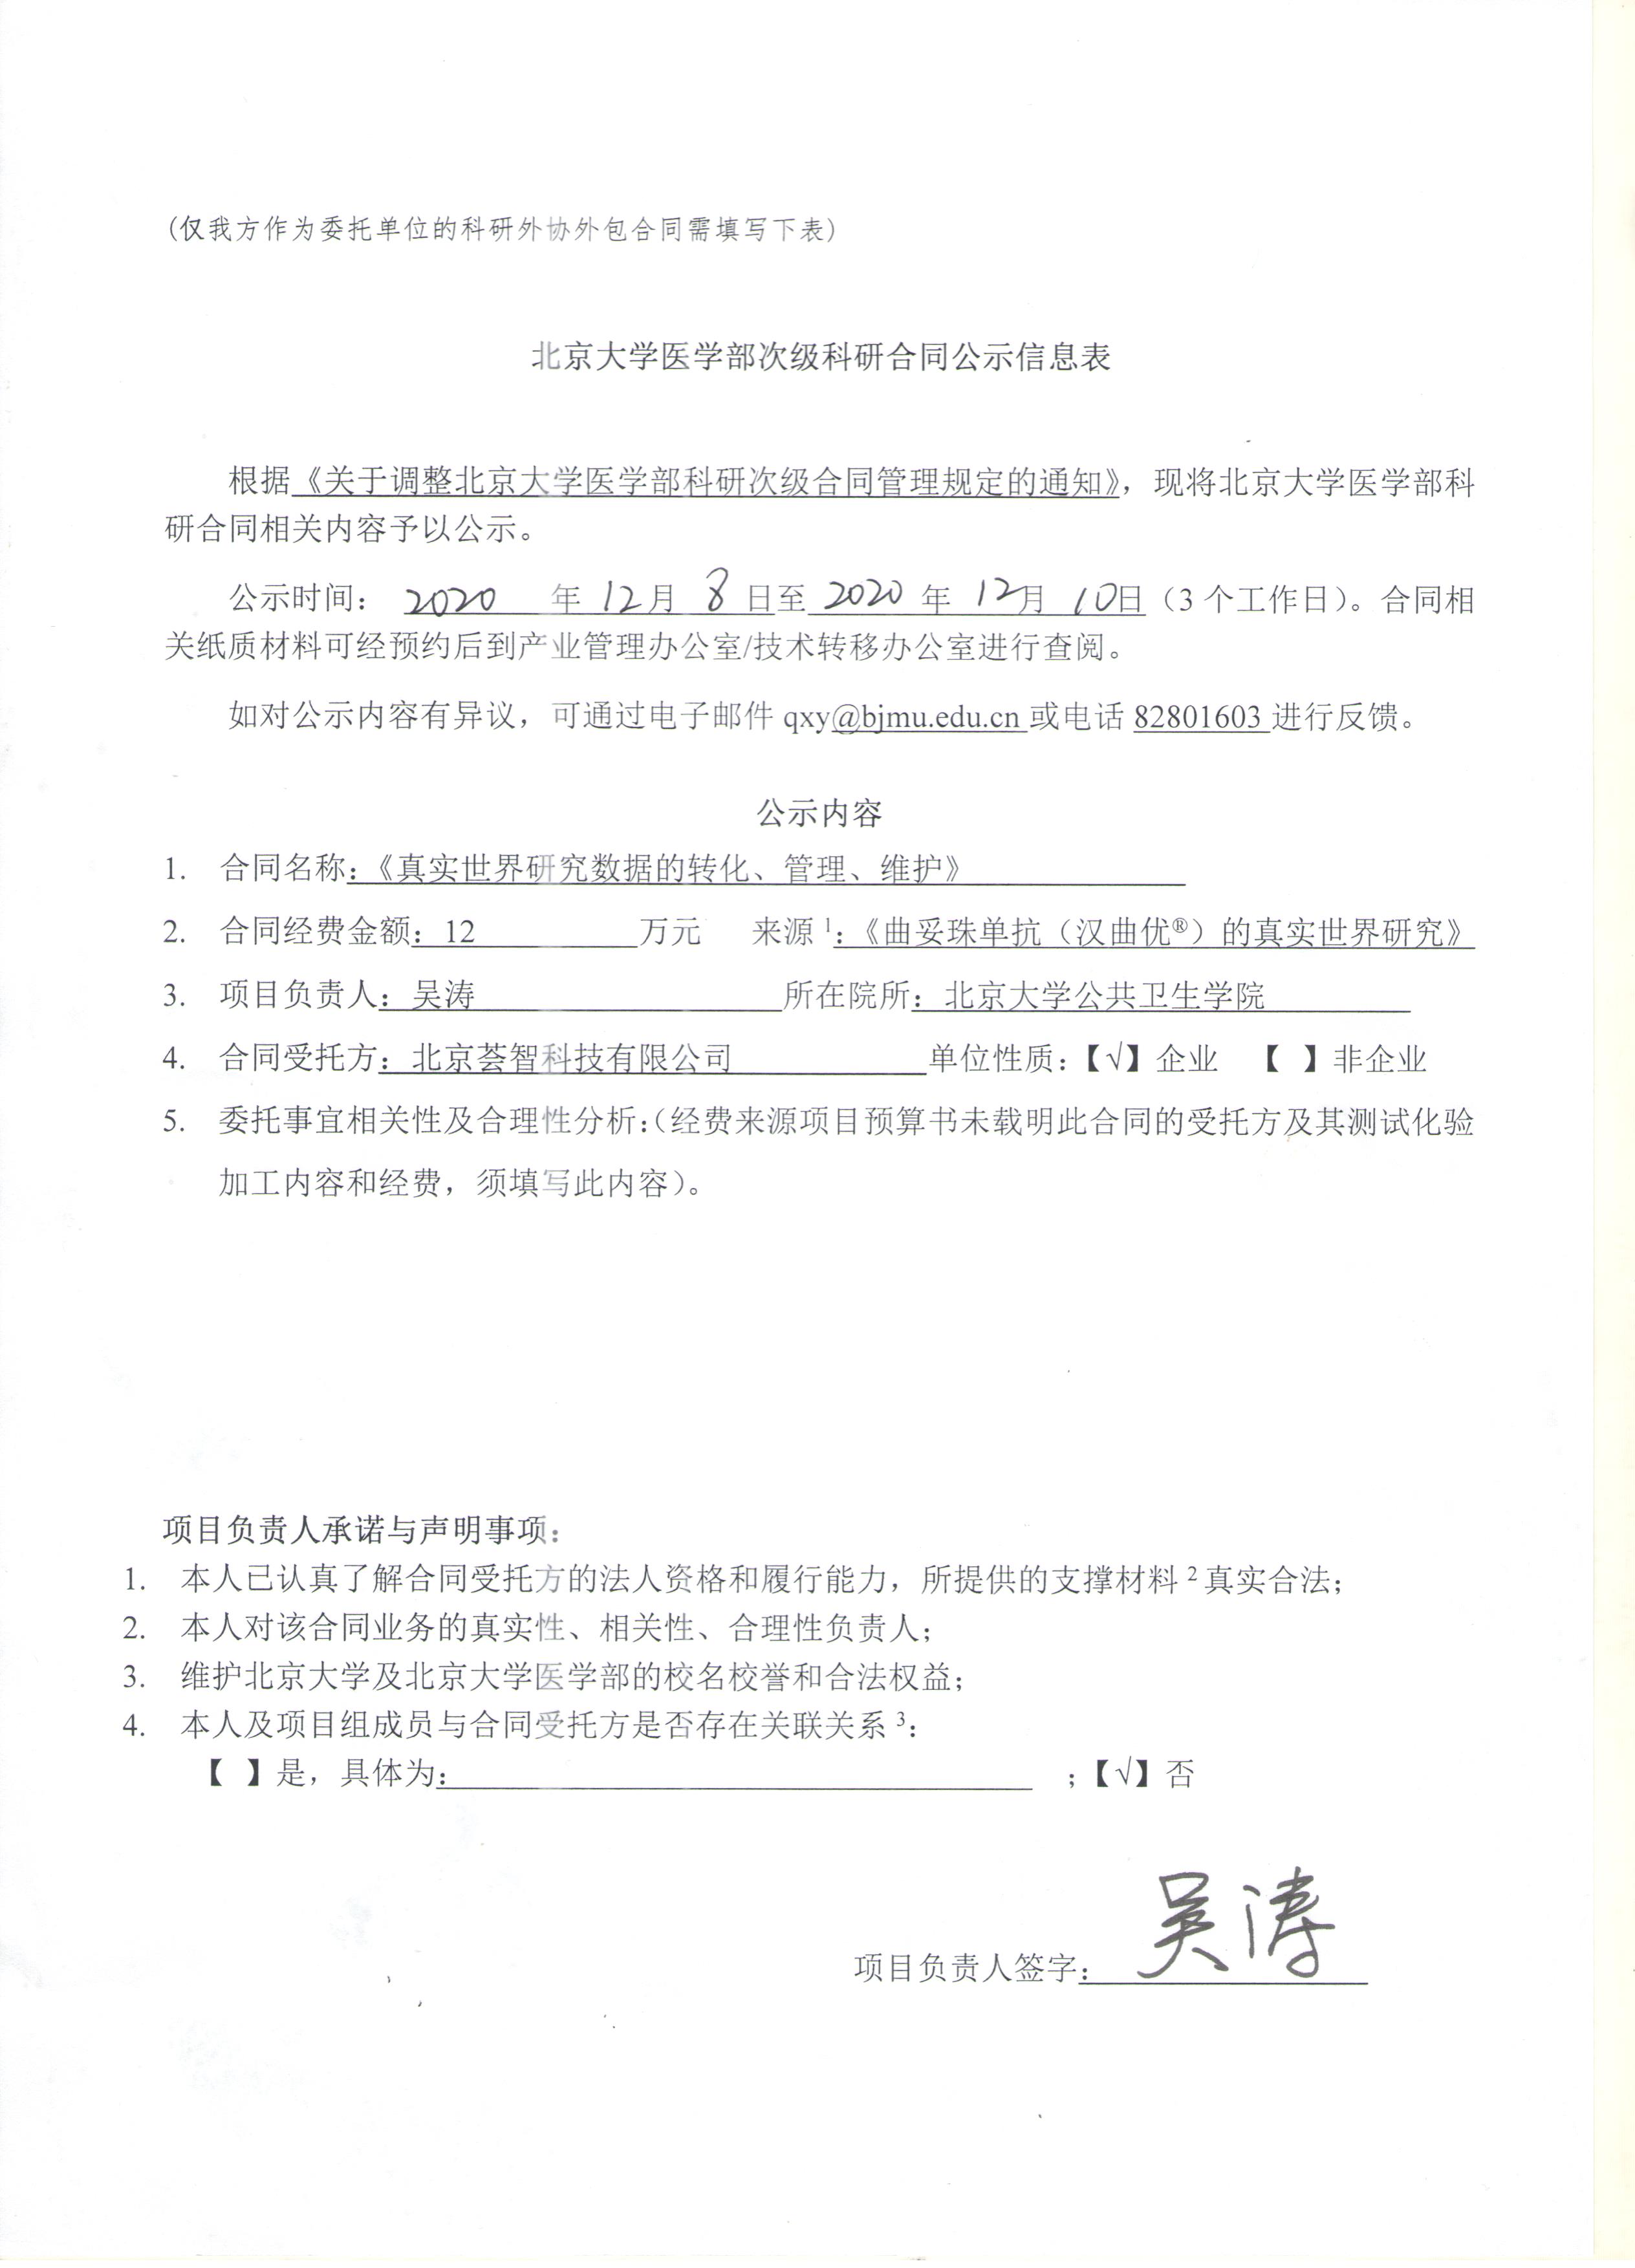 公示-北京大学医学部次级科研合同公示信息表.jpg